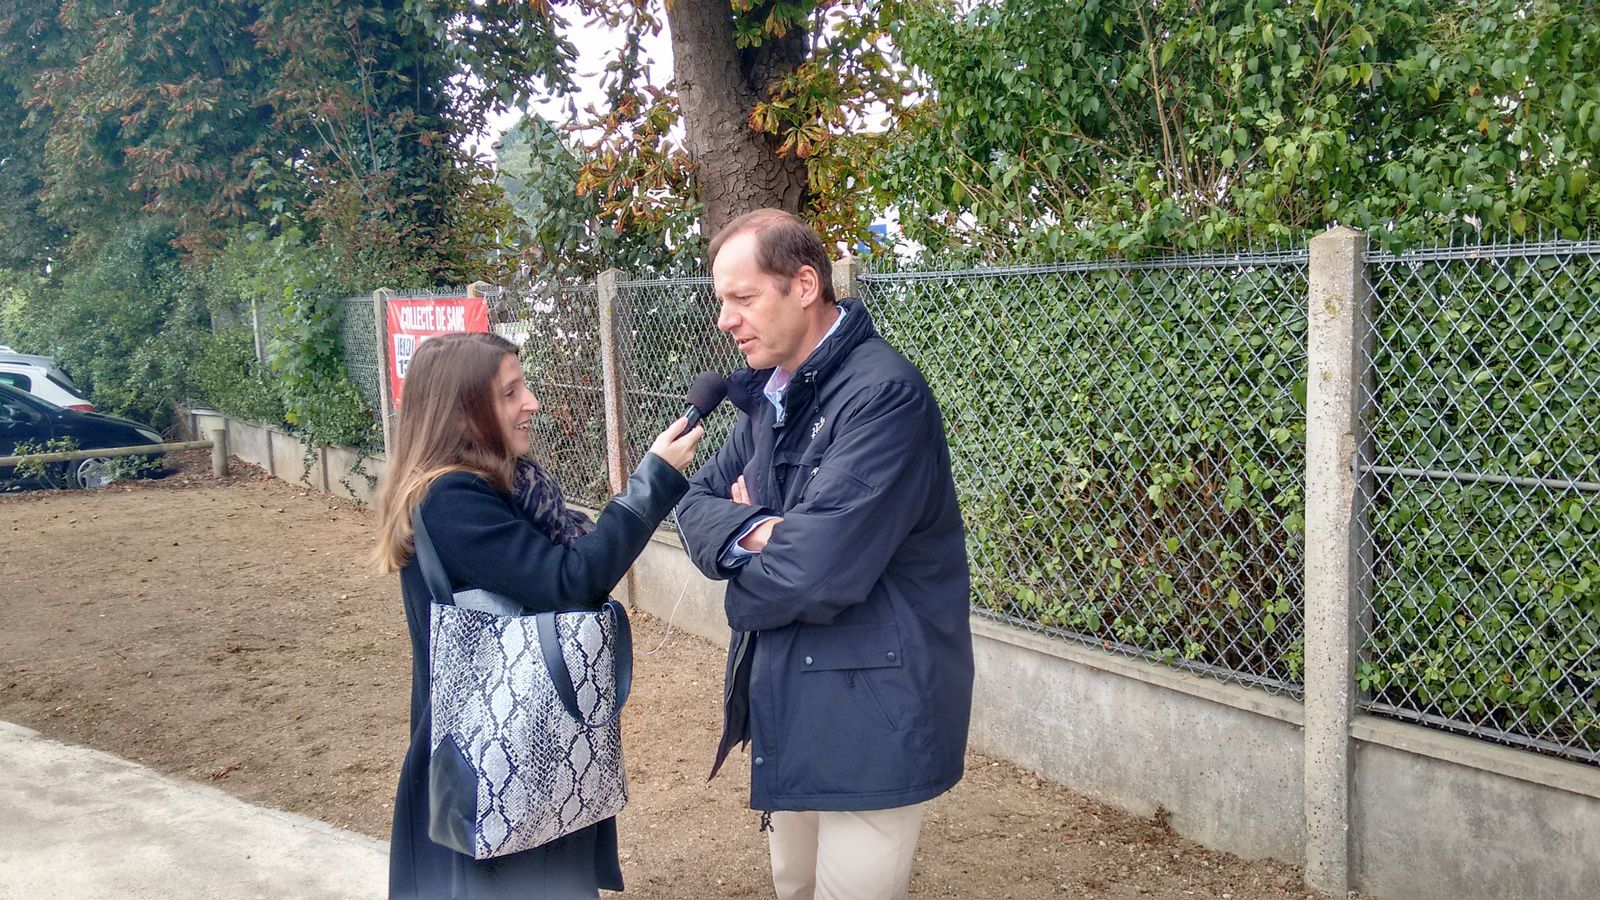 Christian Prudhomme interviewé par la radio locale RTV. Peut-être pour annoncer l'arrivée d'une étape du tour de France.